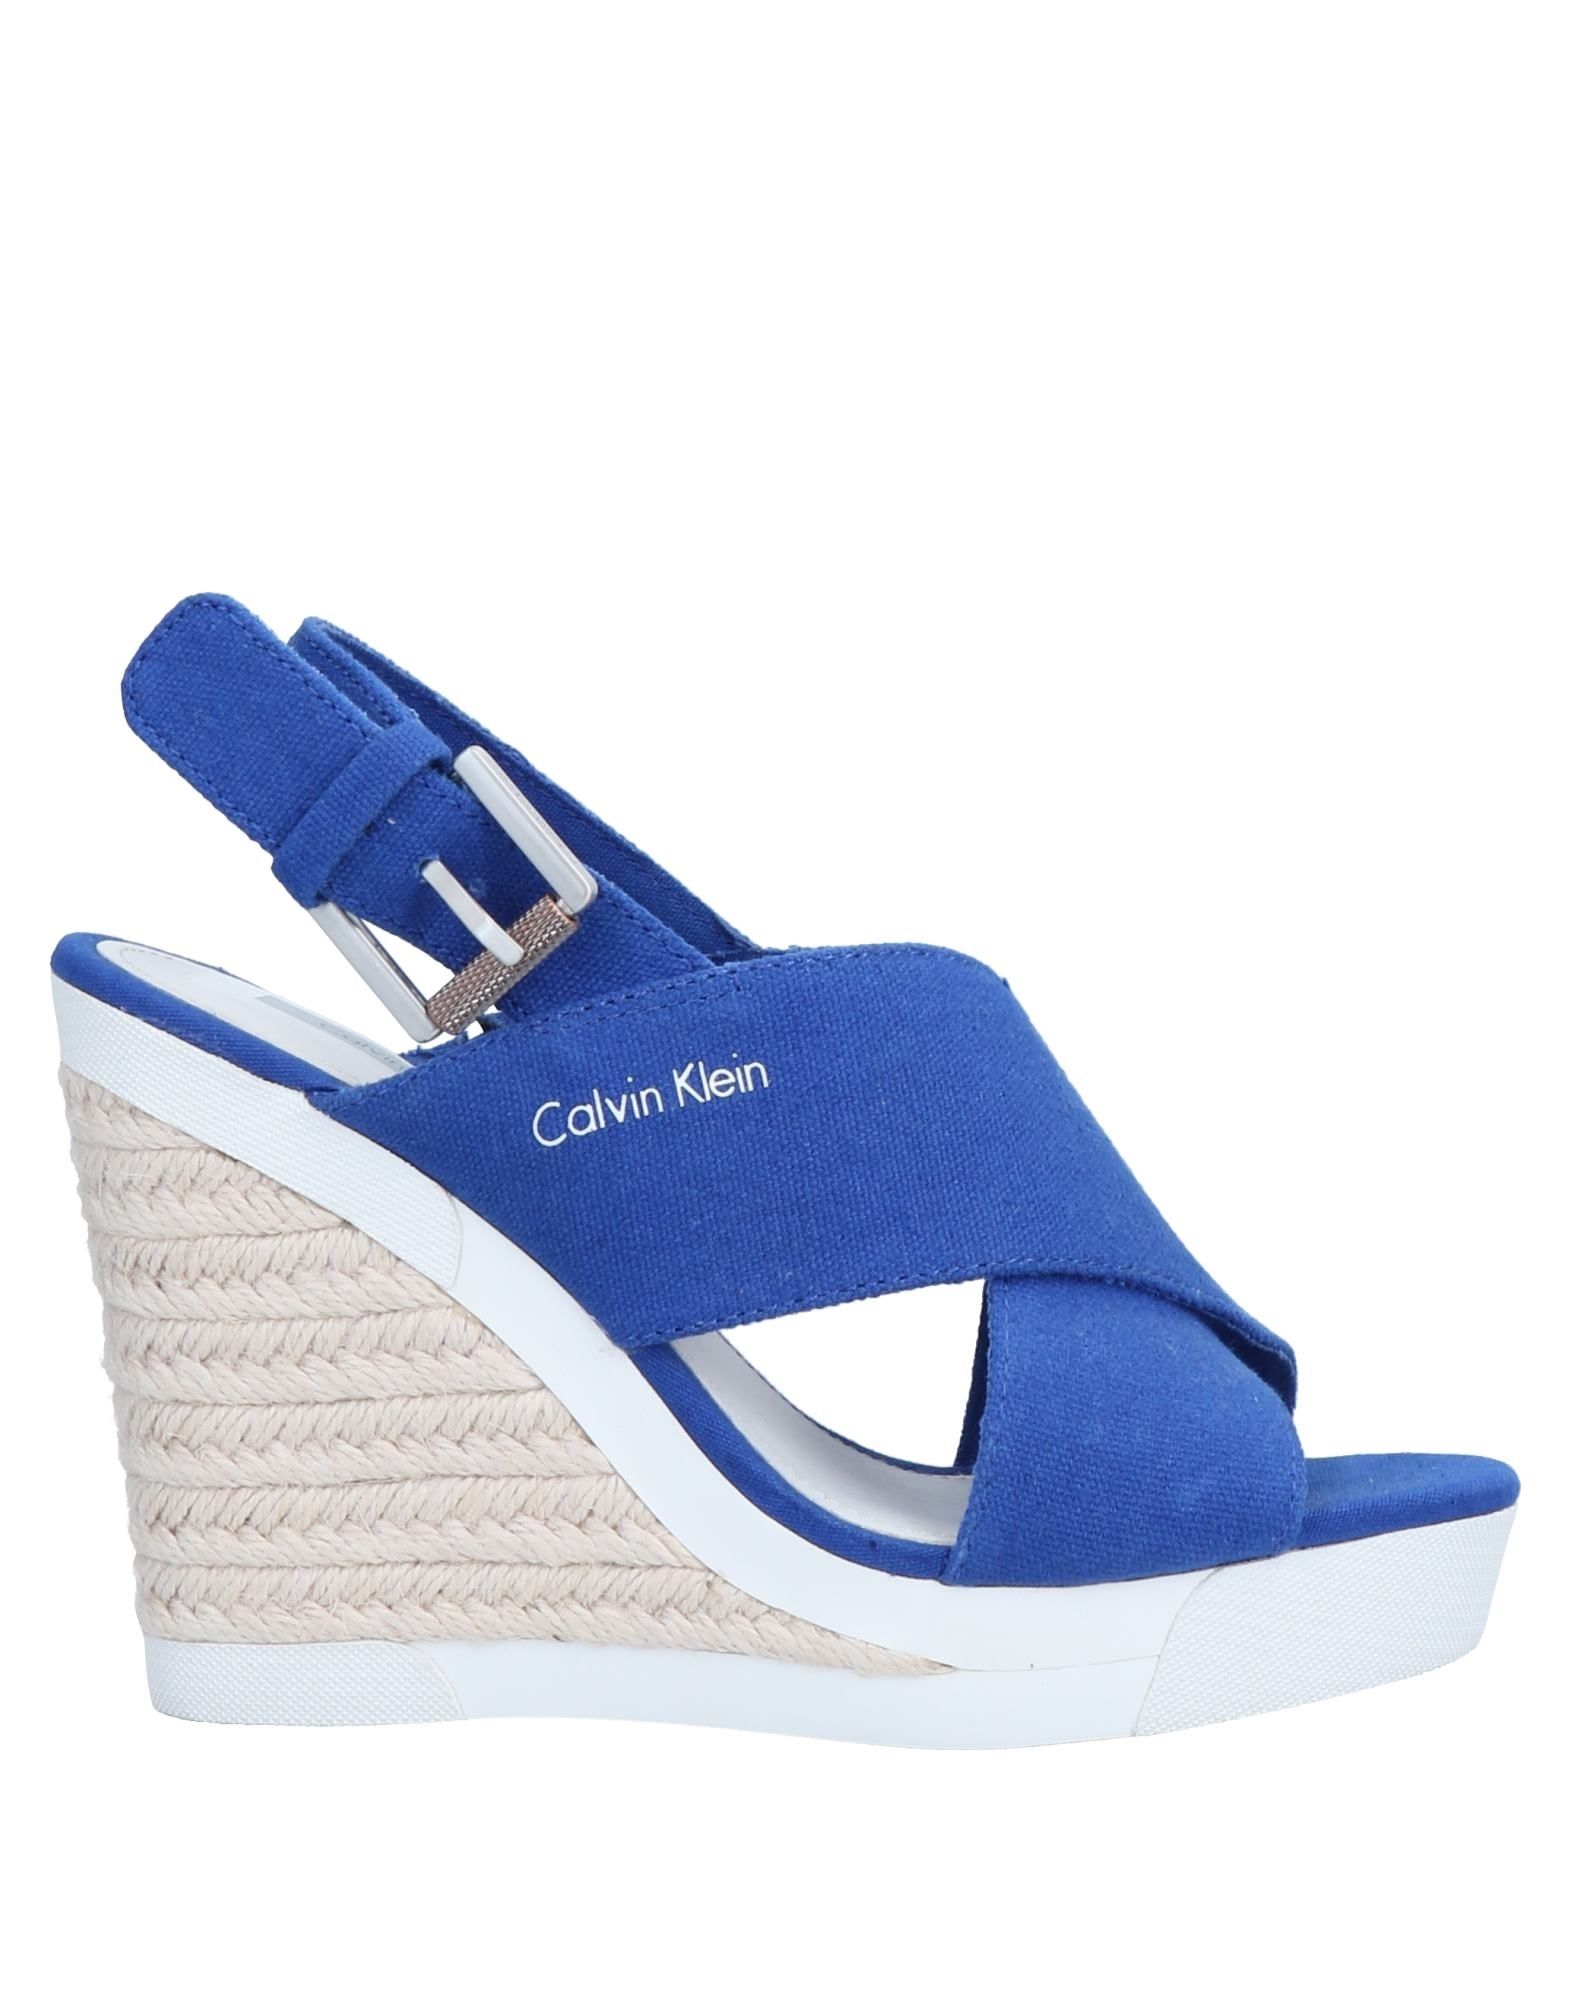 calvin klein blue sandals